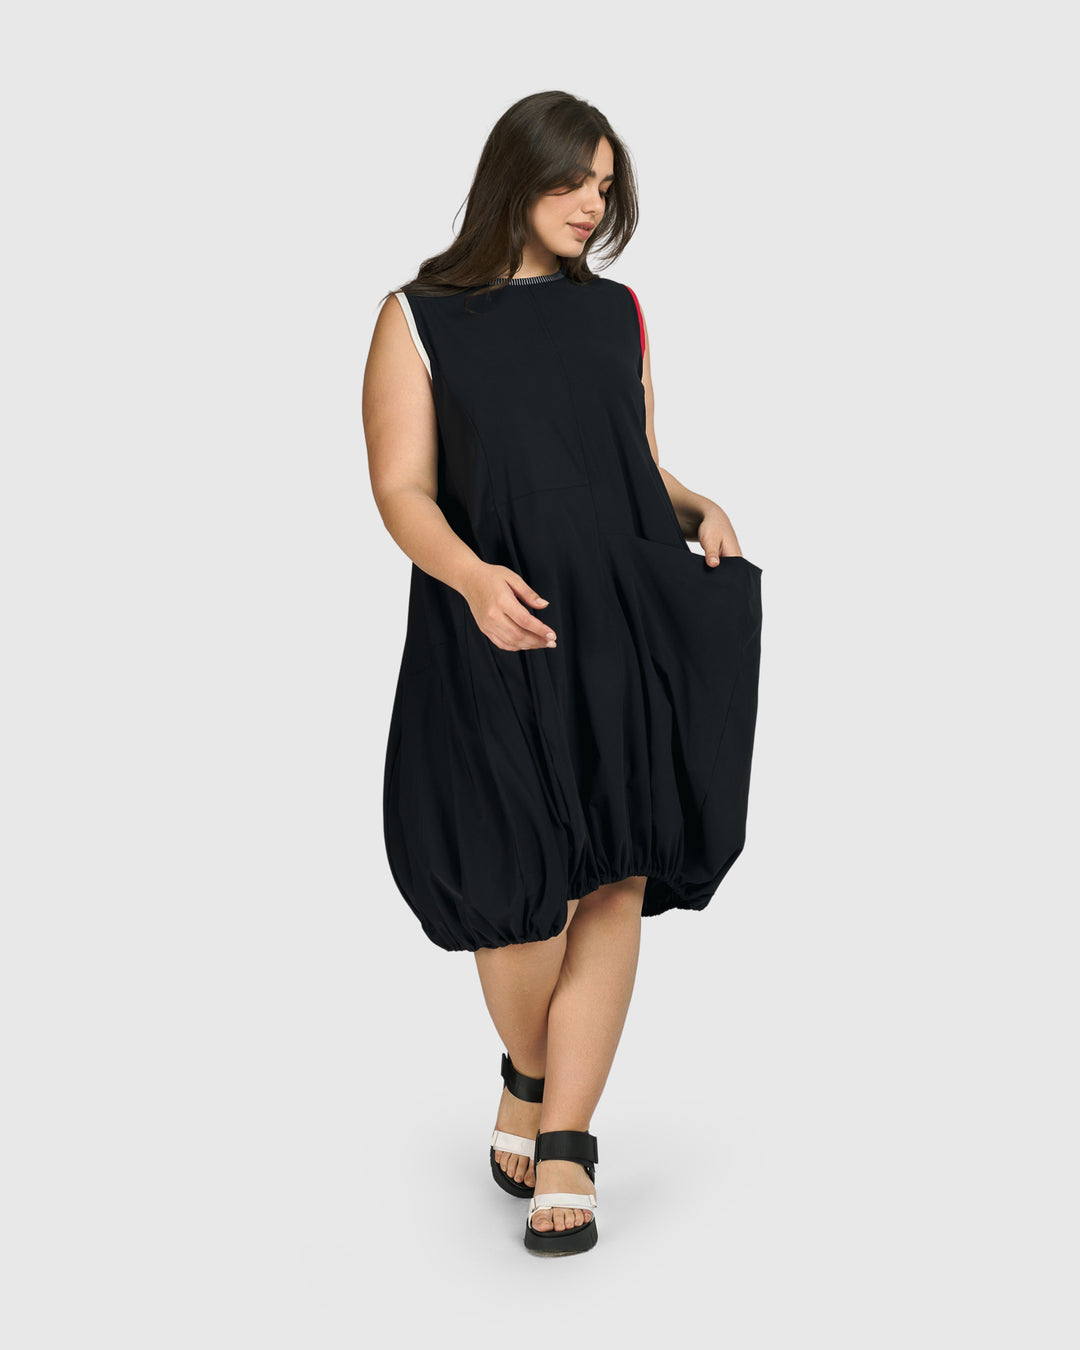 Tekbika Camille Sleeveless Dress,  Black